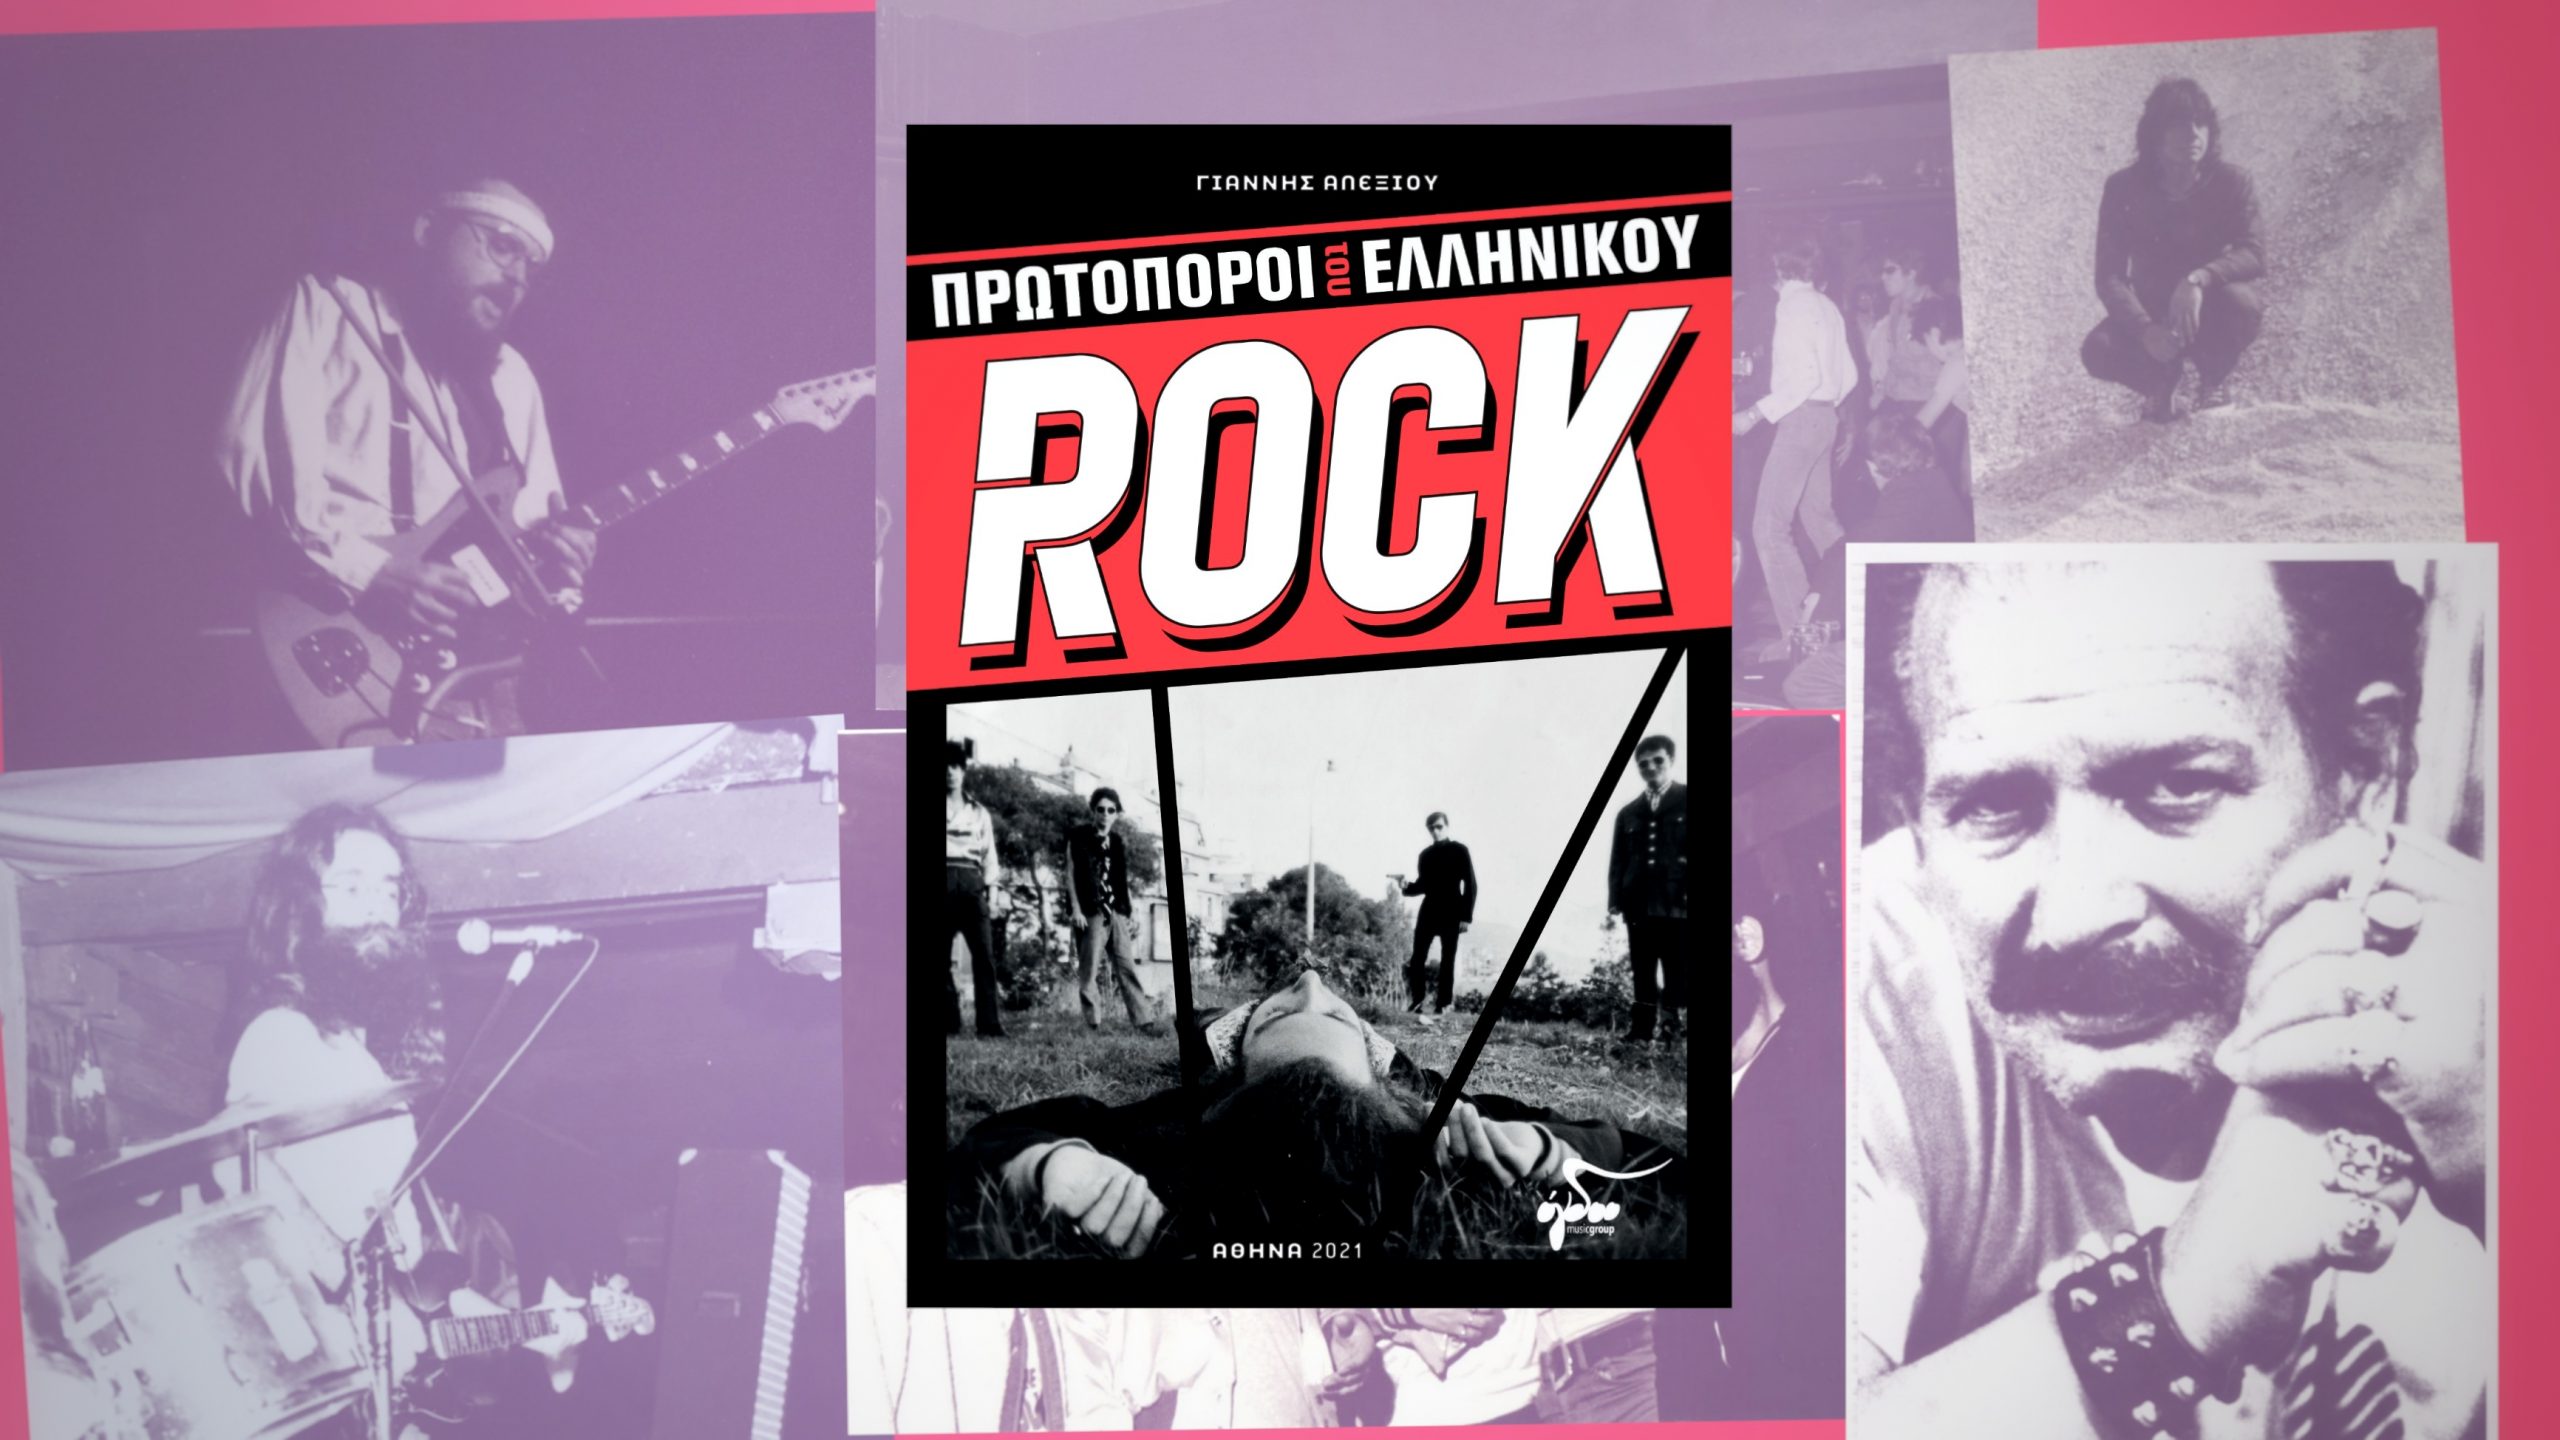 “Οι Πρωτοπόροι του Ελληνικού Rock” – Ο συγγραφέας Γιάννης Αλεξίου μιλά για το νέο του βιβλίο